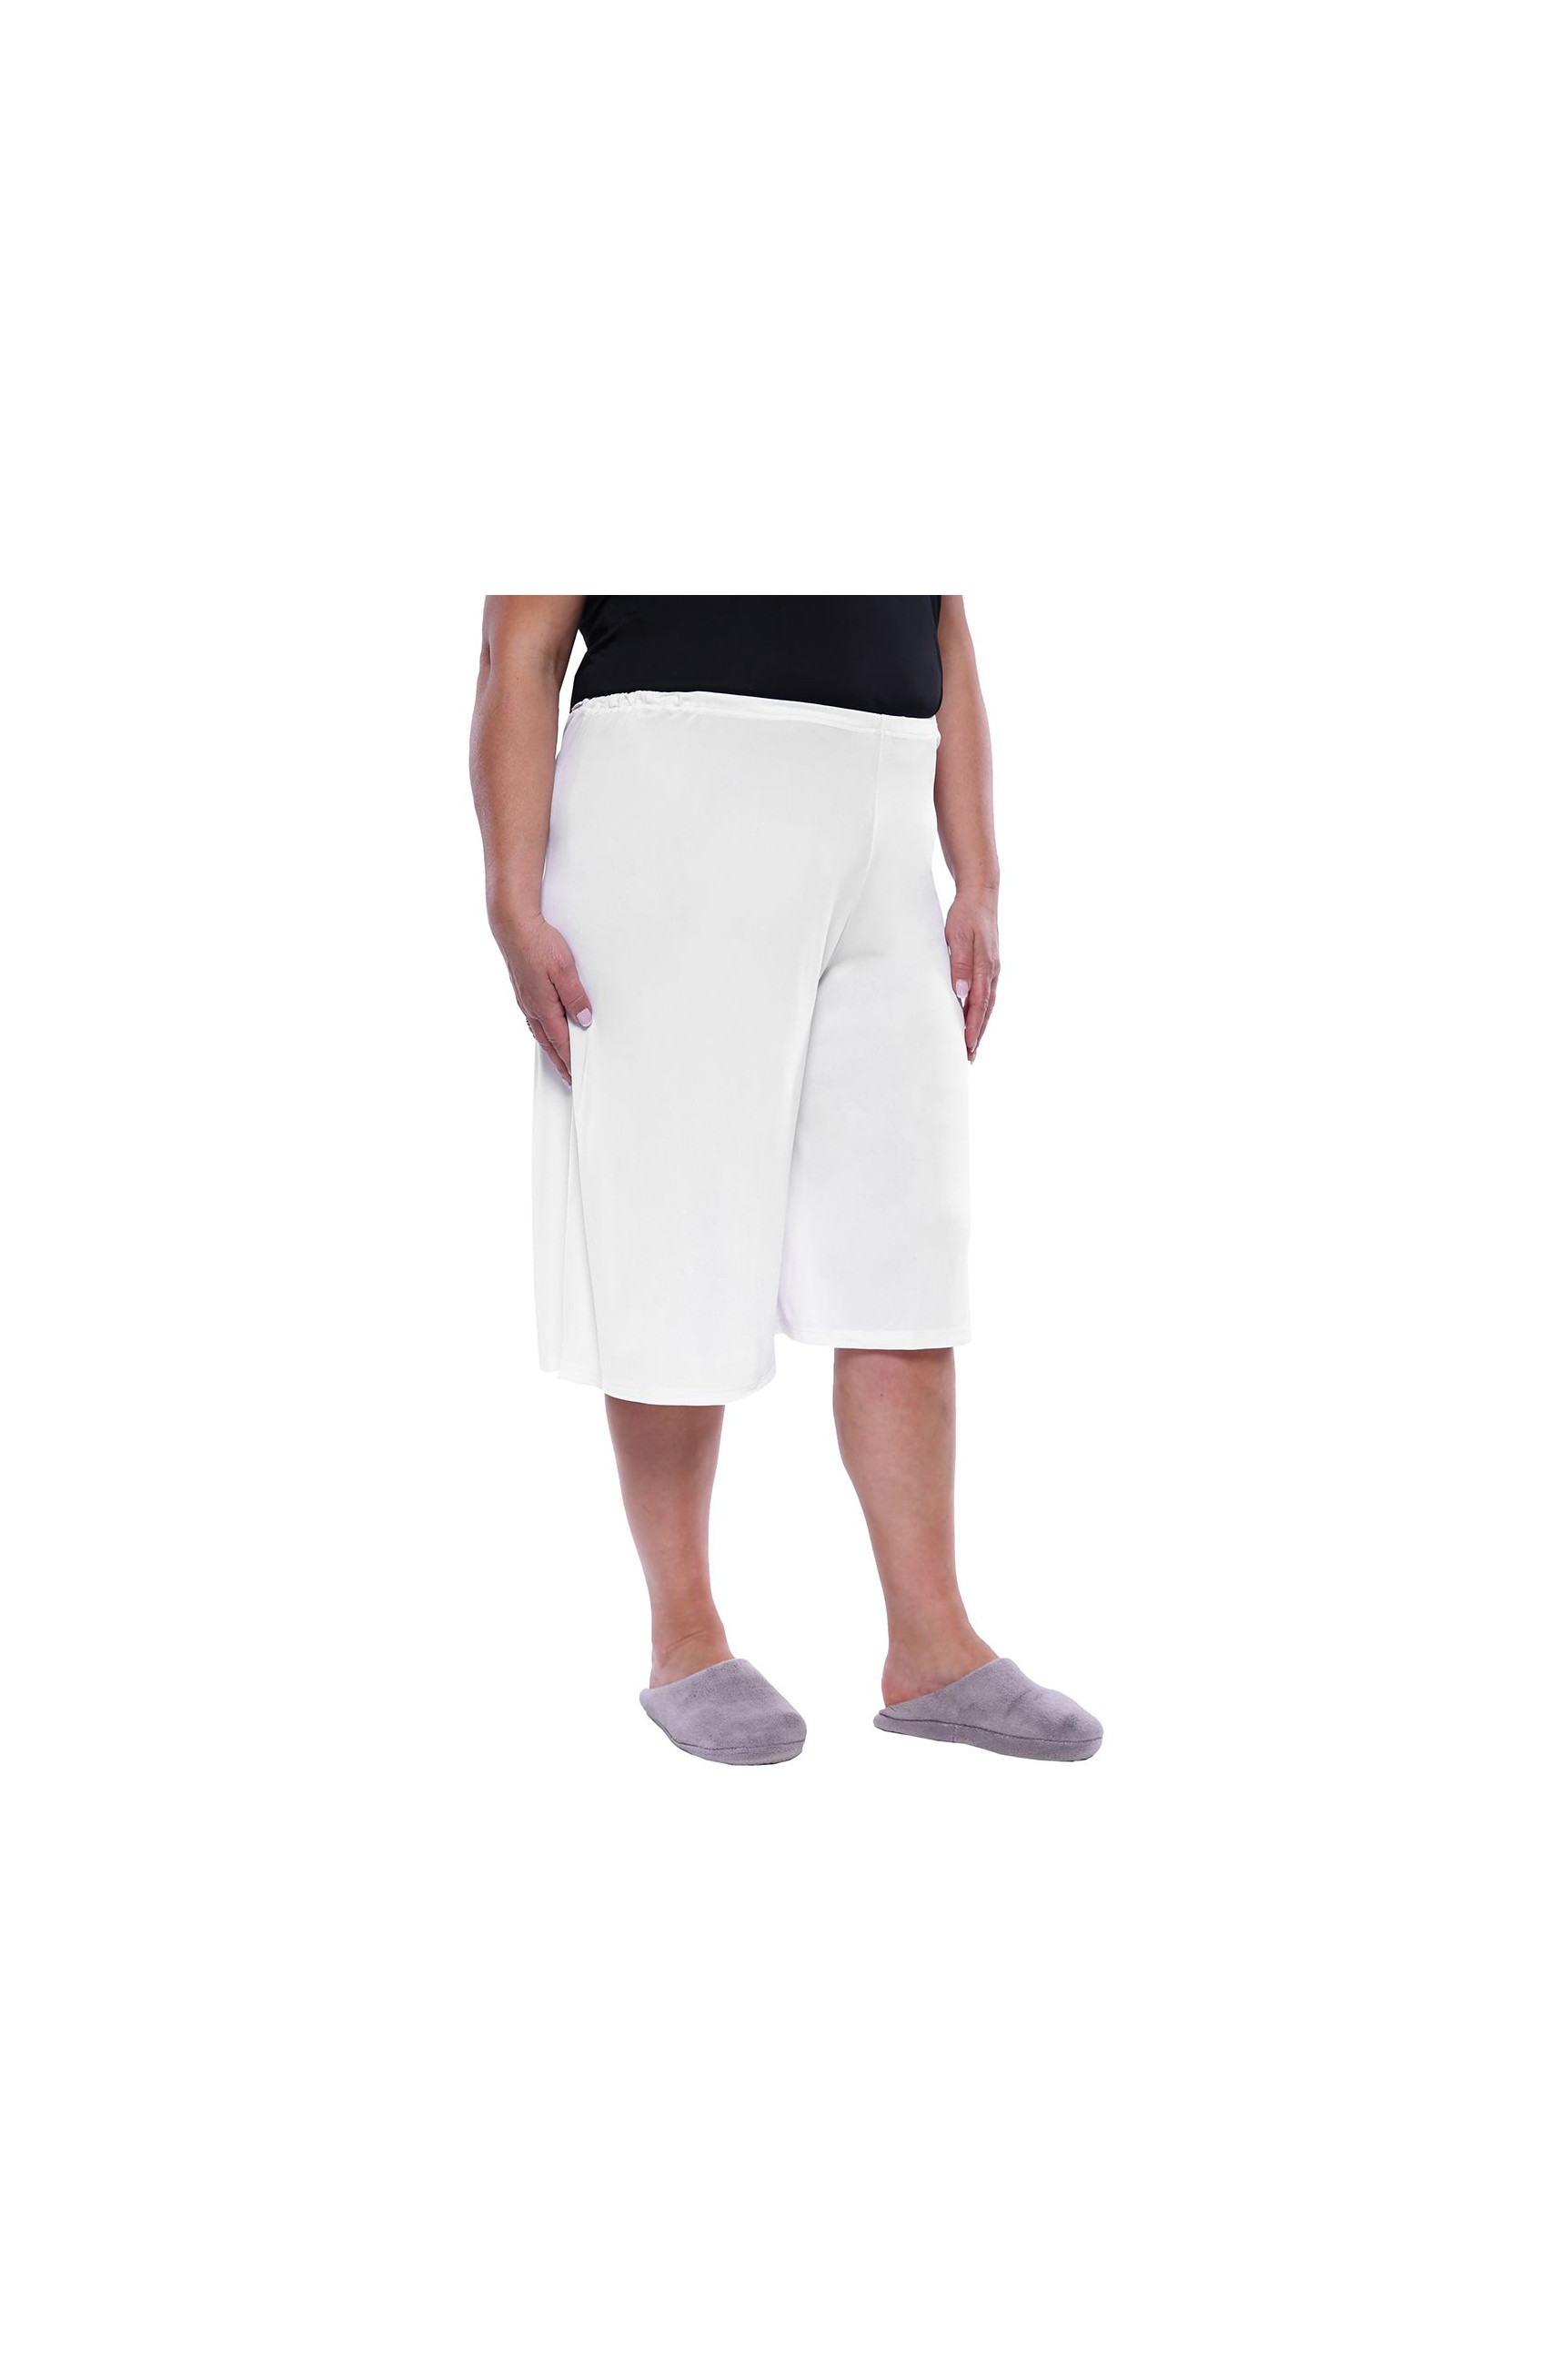 Nohavicova spodnička v bielej farbe značky Mewa